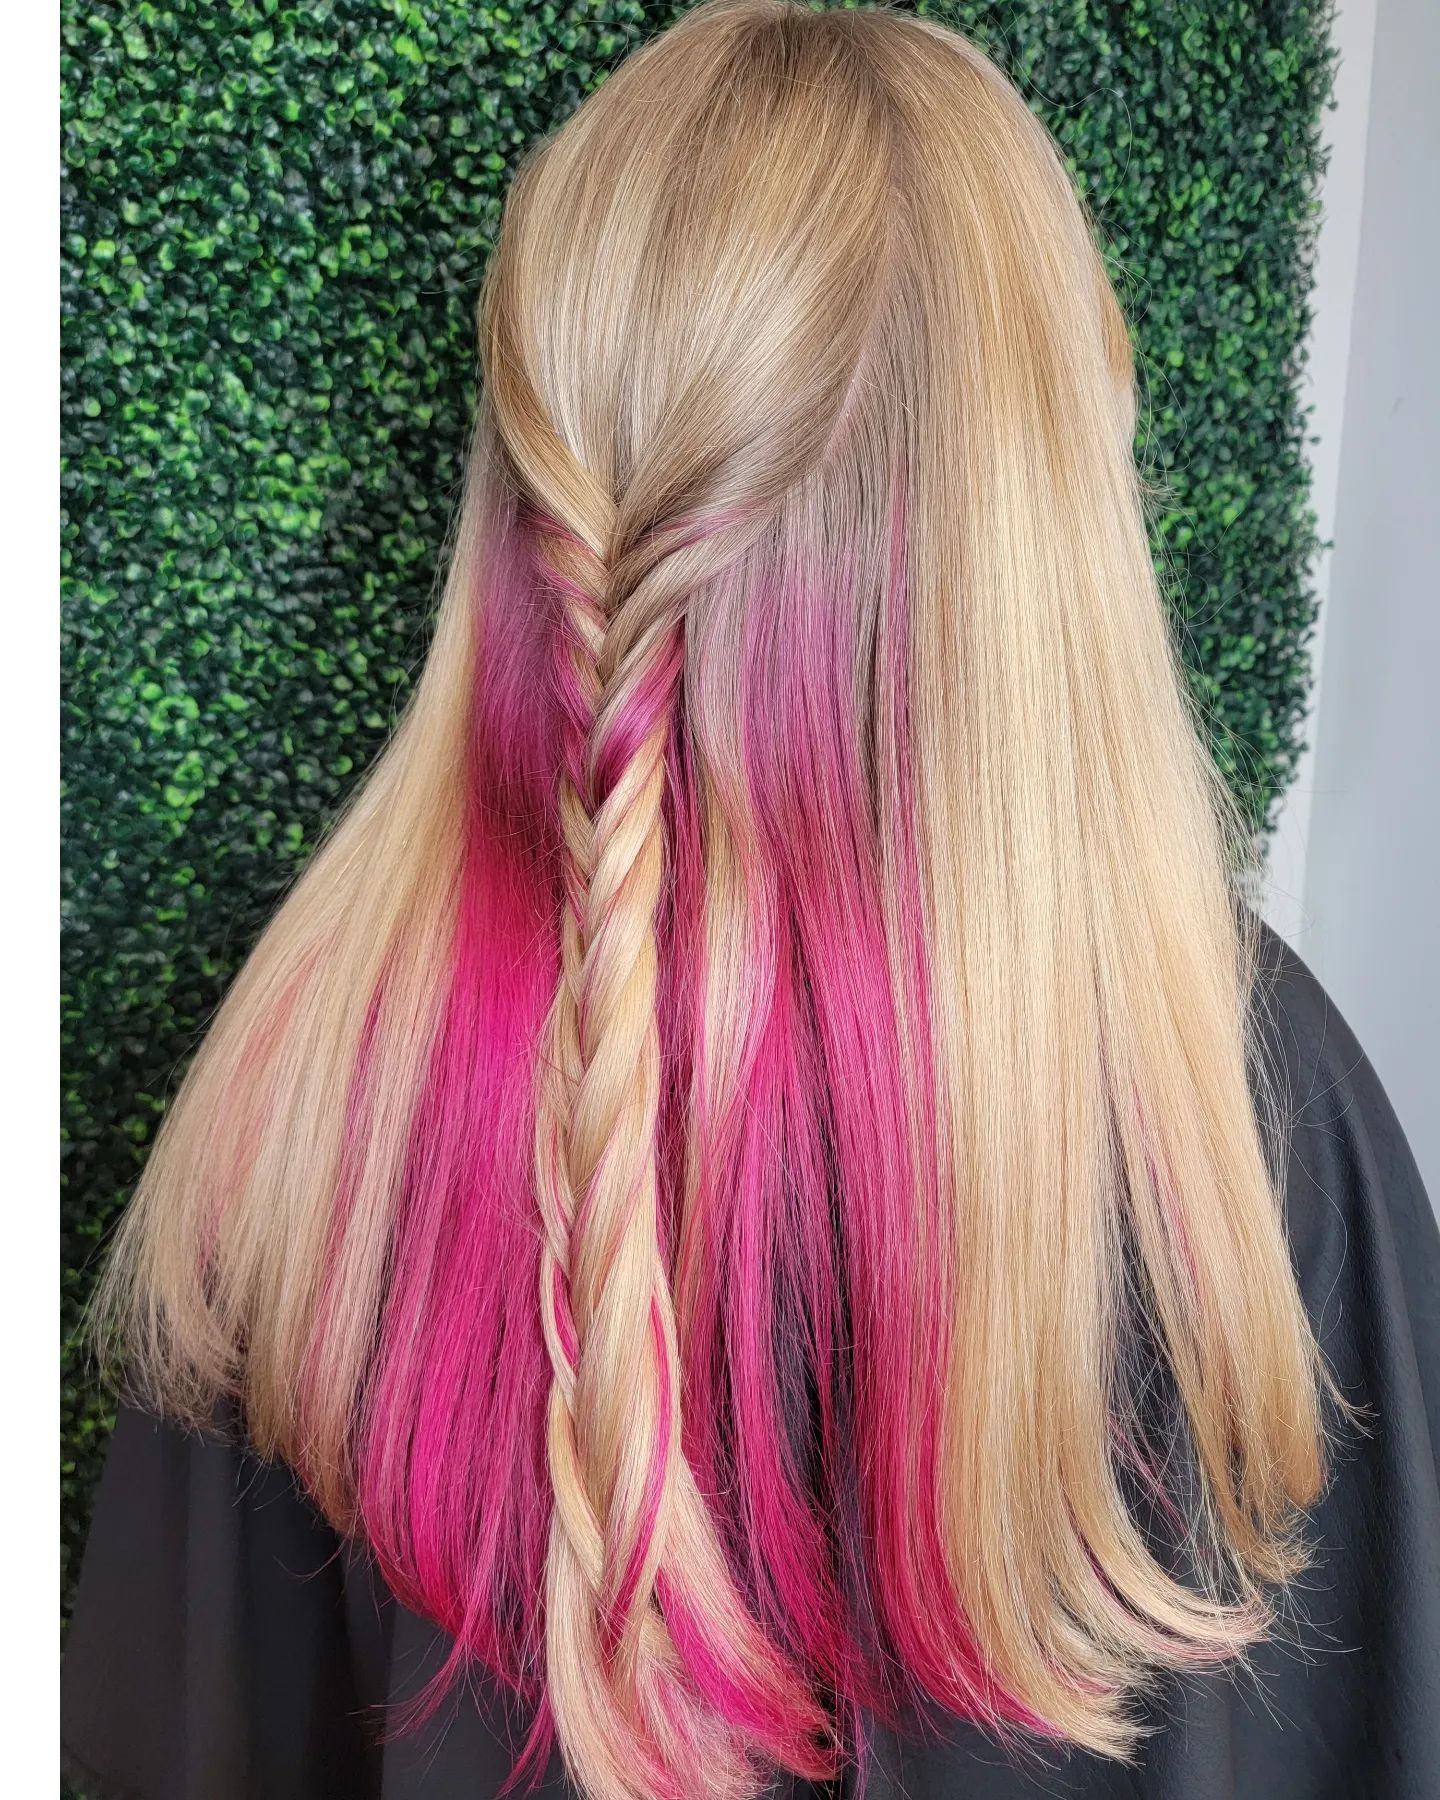 Vivid Hair Color 153 Vivid hair color | Vivid hair color ideas | Vivid hair color ideas for women Vivid Hair Color for Women